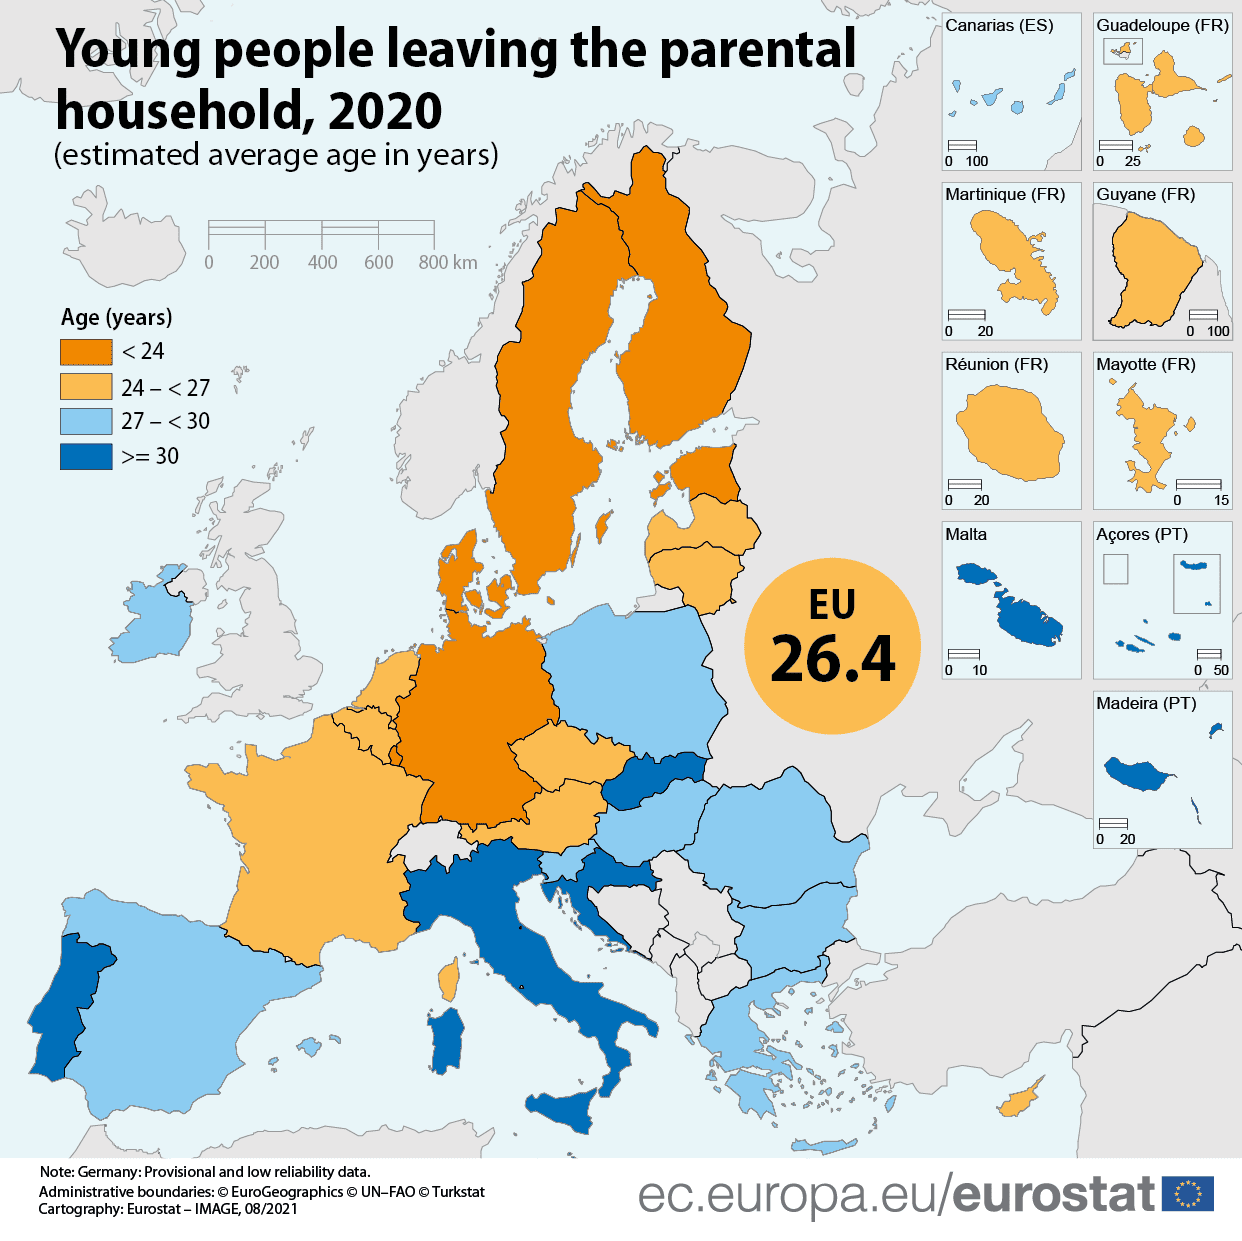 Χάρτης της ΕΥΡΏΠΗΣ - πότε αφήνουν οι νέοι την οικογένειά τους